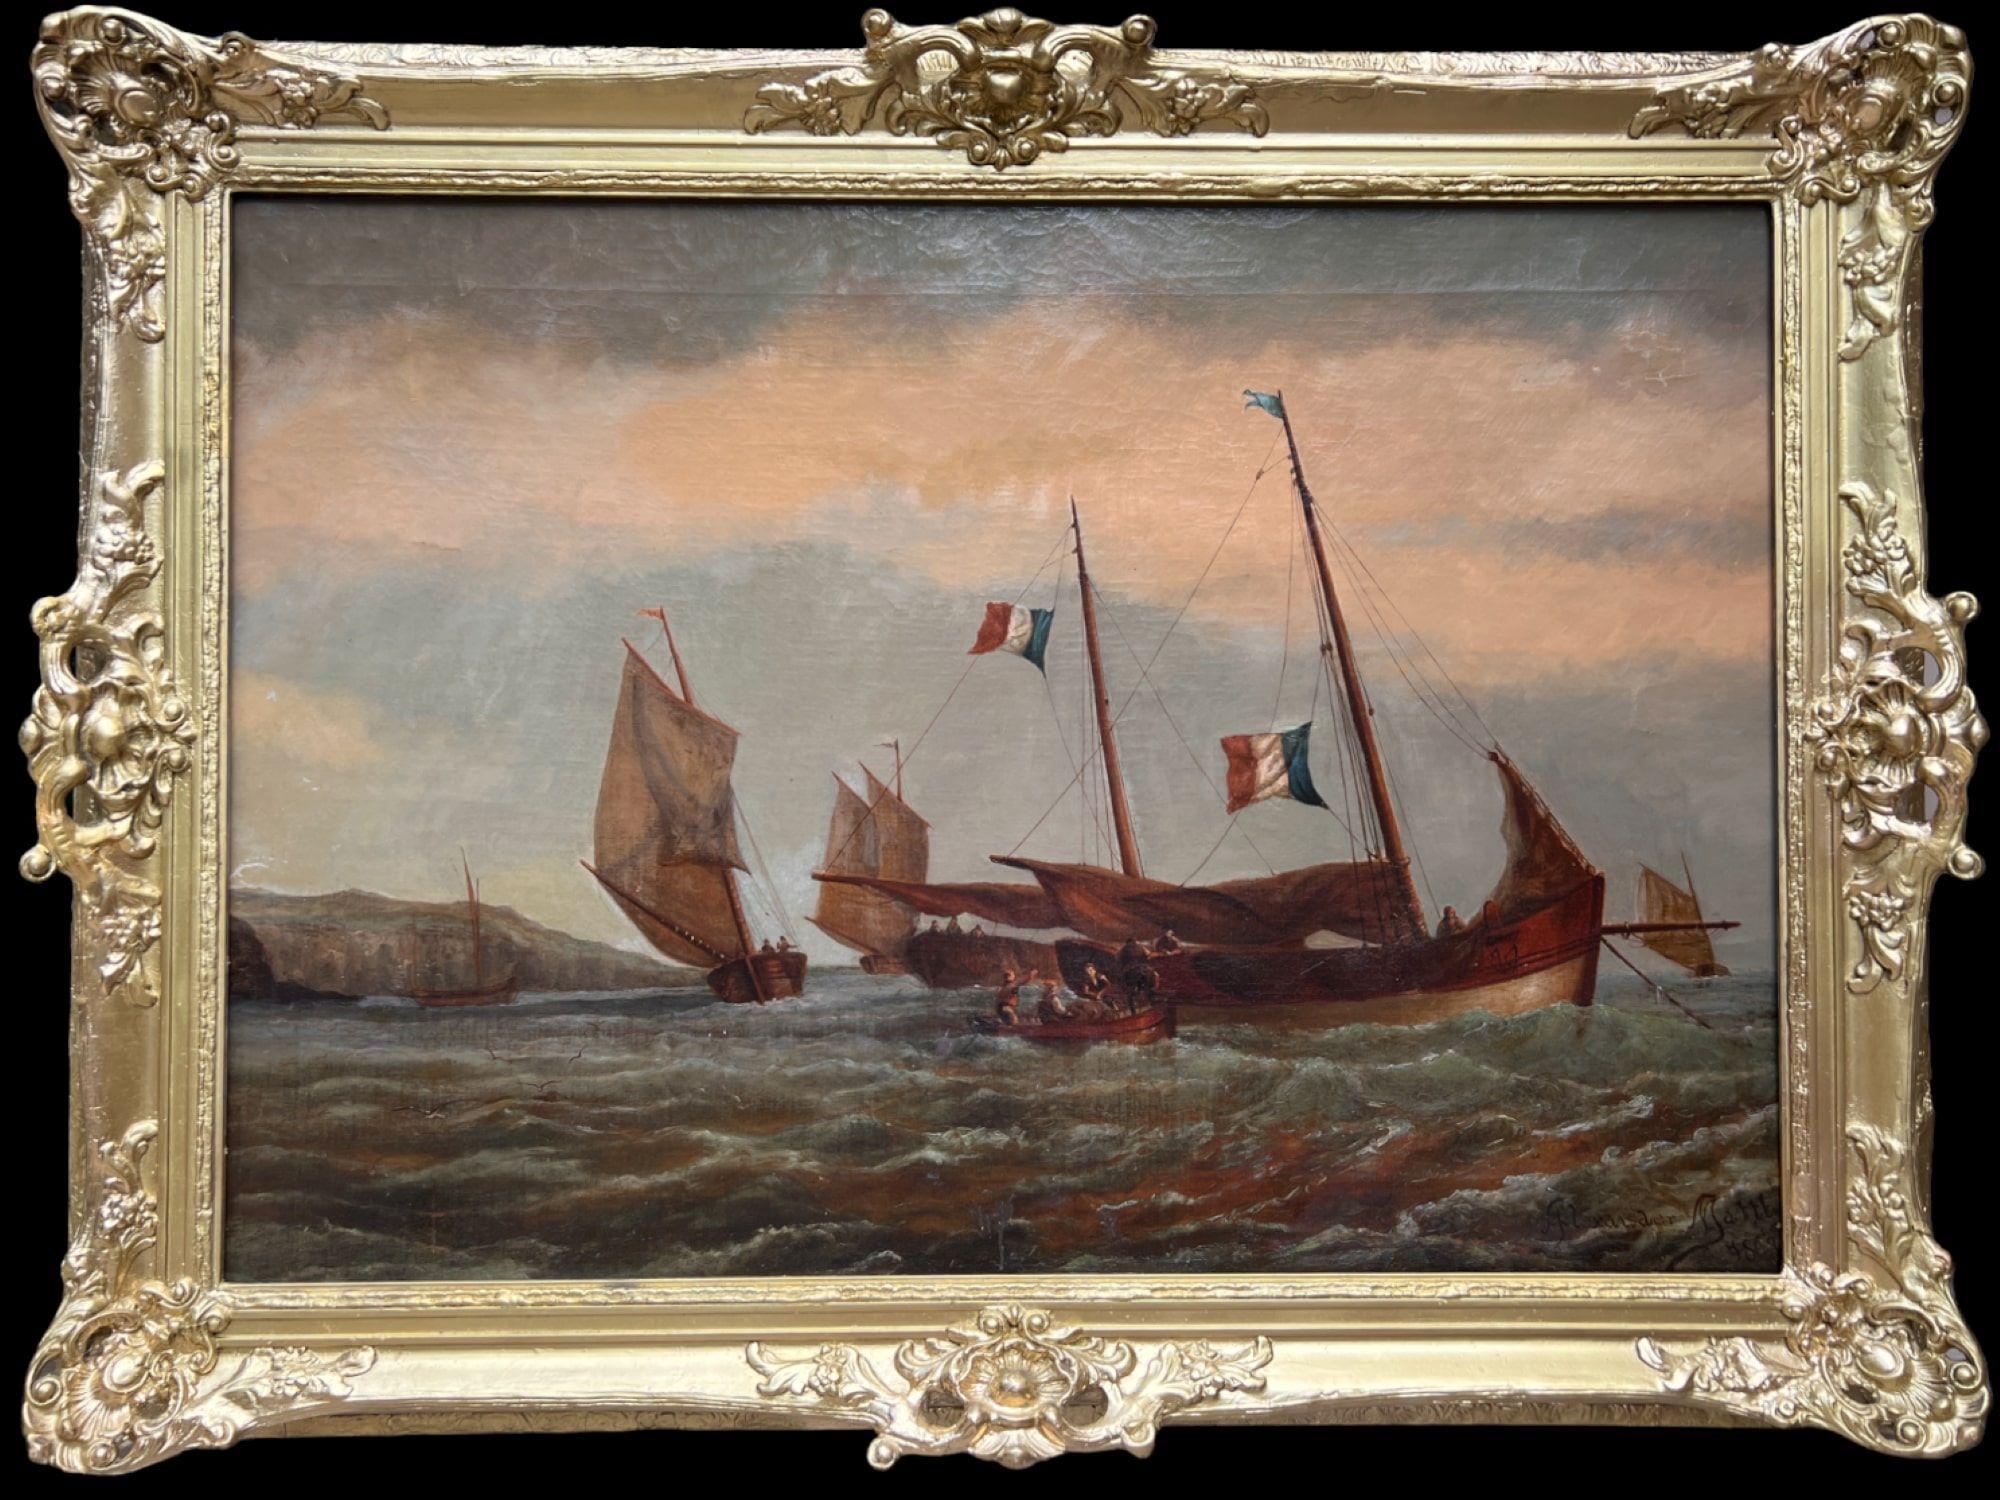 Up&Up est une phénoménale peinture à l'huile sur toile de l'école hollandaise, représentant un paysage marin.  plusieurs voiliers en haute mer près de la côte et un bateau avec des pêcheurs ou des marins. 

Signée dans un coin inférieur droit